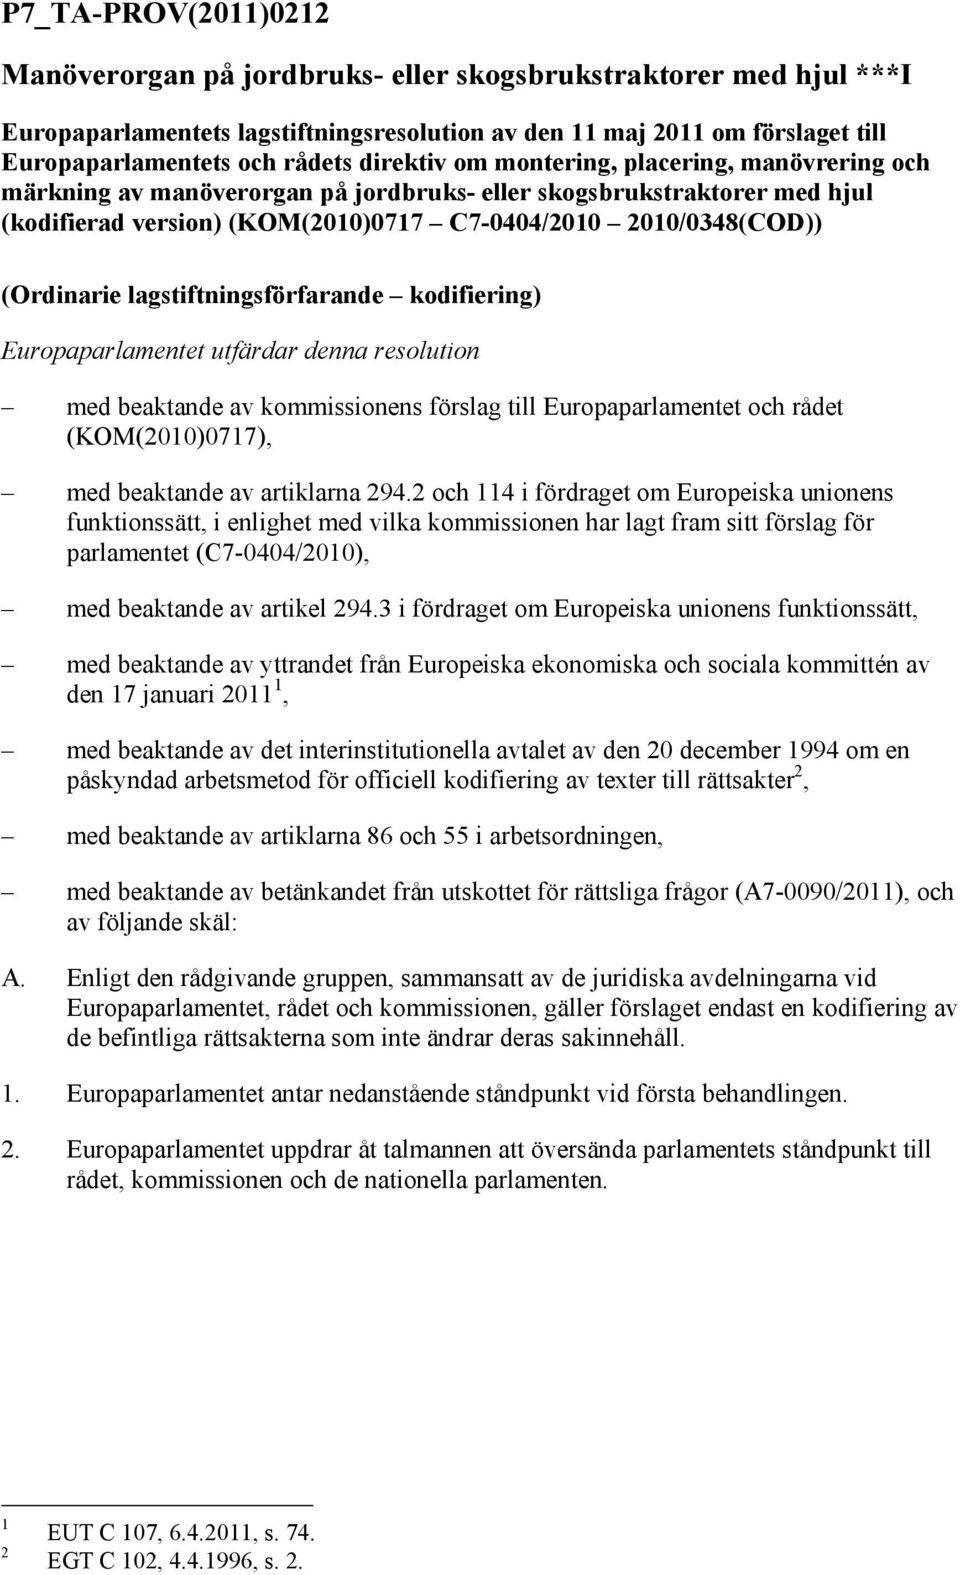 lagstiftningsförfarande kodifiering) Europaparlamentet utfärdar denna resolution med beaktande av kommissionens förslag till Europaparlamentet och rådet (KOM(2010)0717), med beaktande av artiklarna